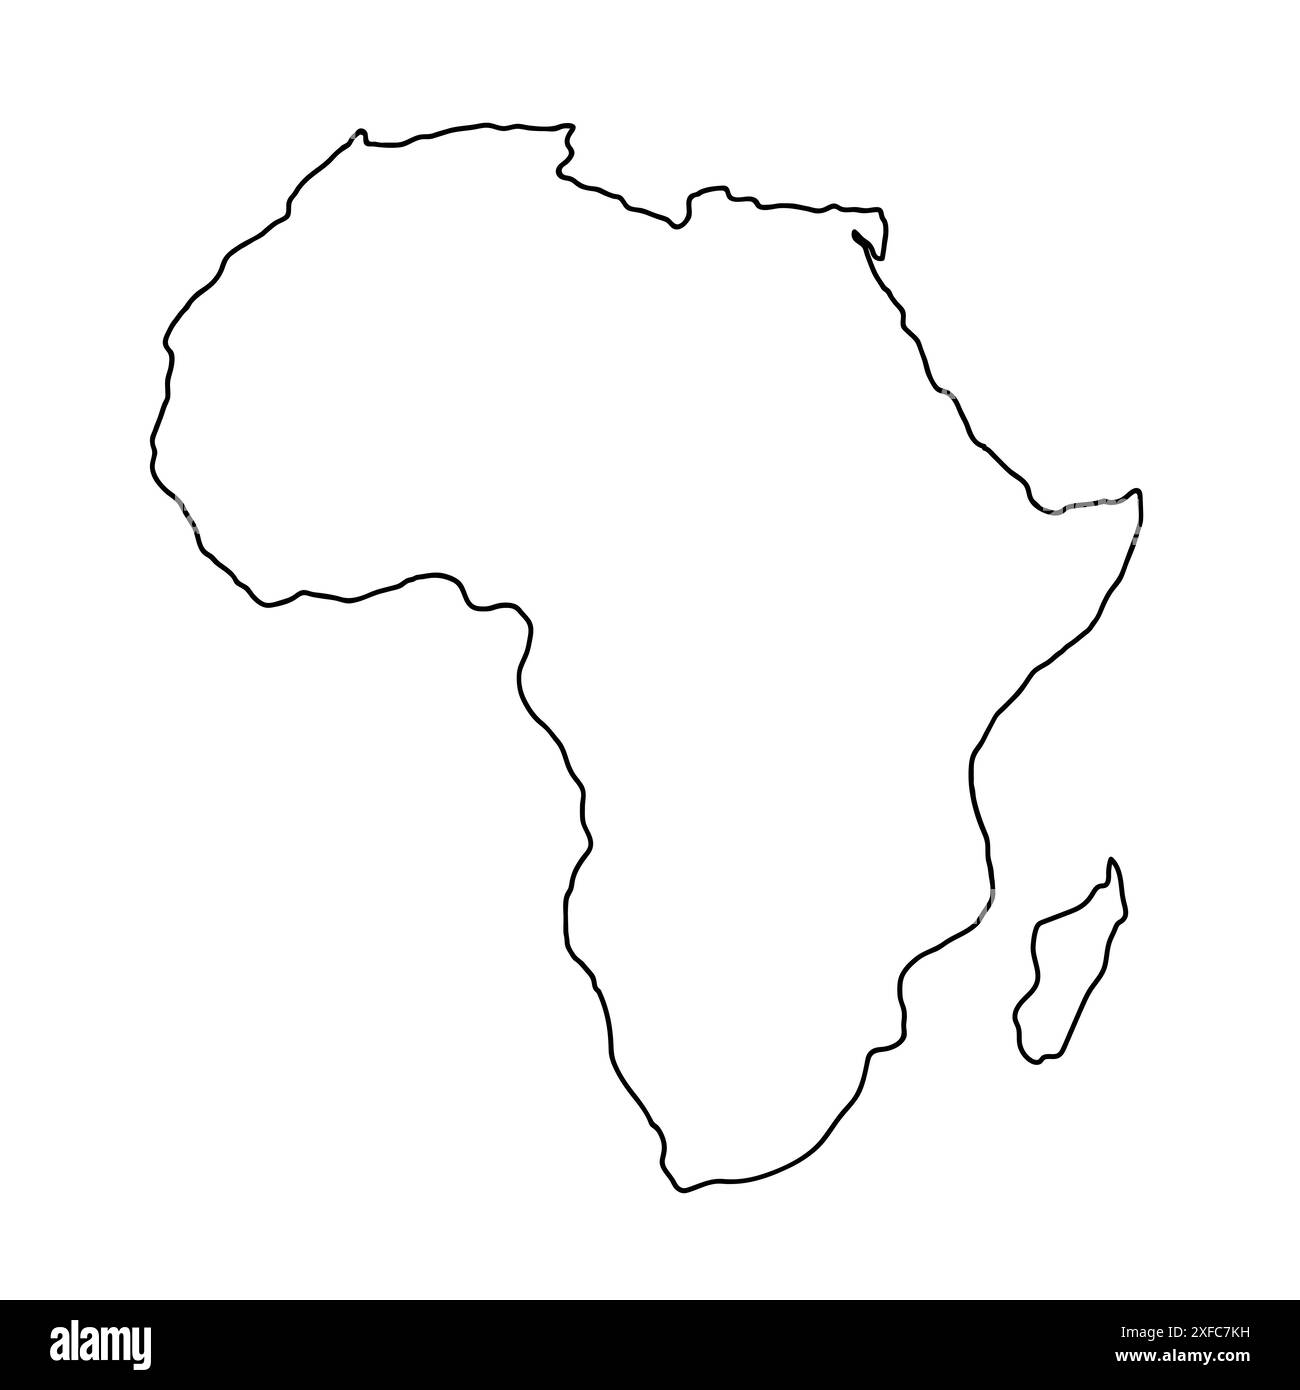 Africa mappa disegnata a mano, sagoma del continente, contorni stilizzati, linea nera. Illustrazione Vettoriale